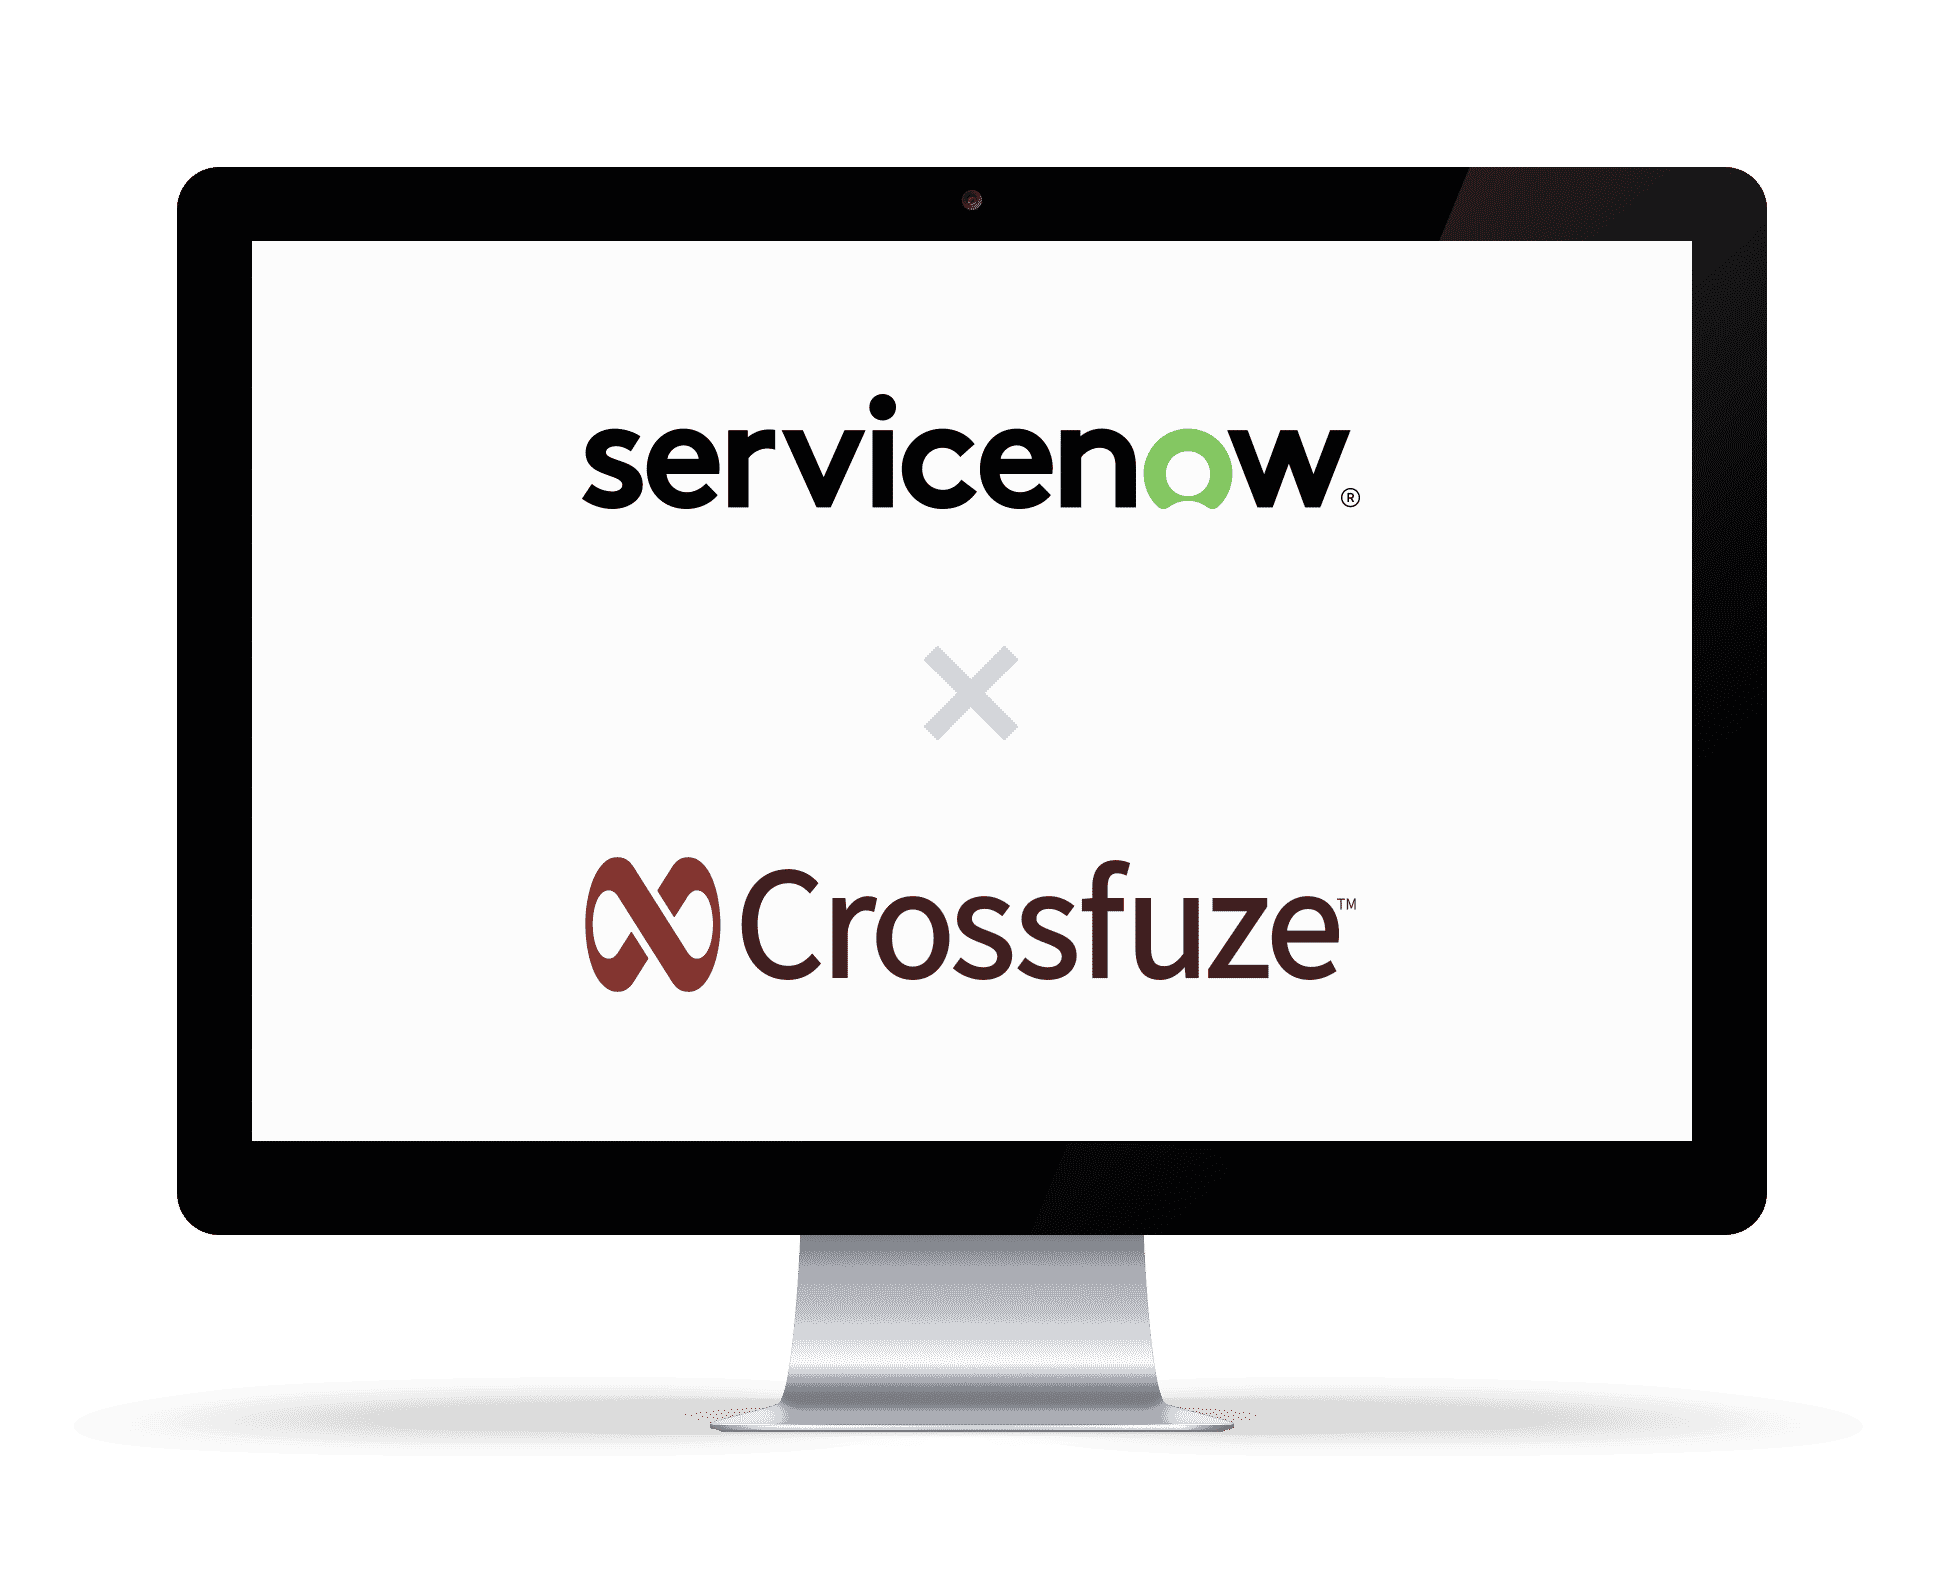 Crossfuze/ServiceNow ITOM Webinar - Crossfuze